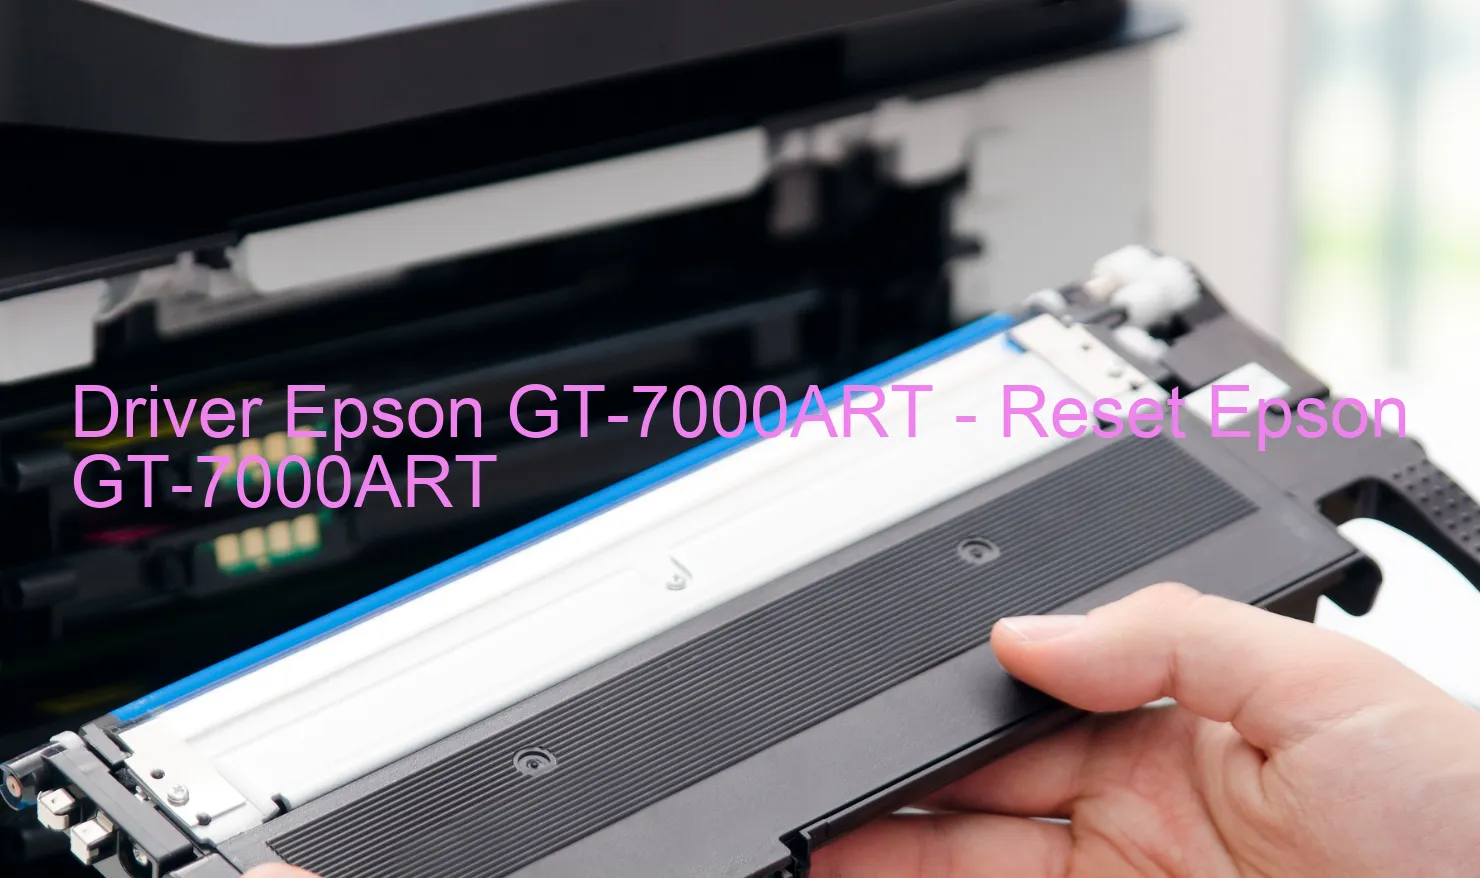 Epson GT-7000ARTのドライバー、Epson GT-7000ARTのリセットソフトウェア